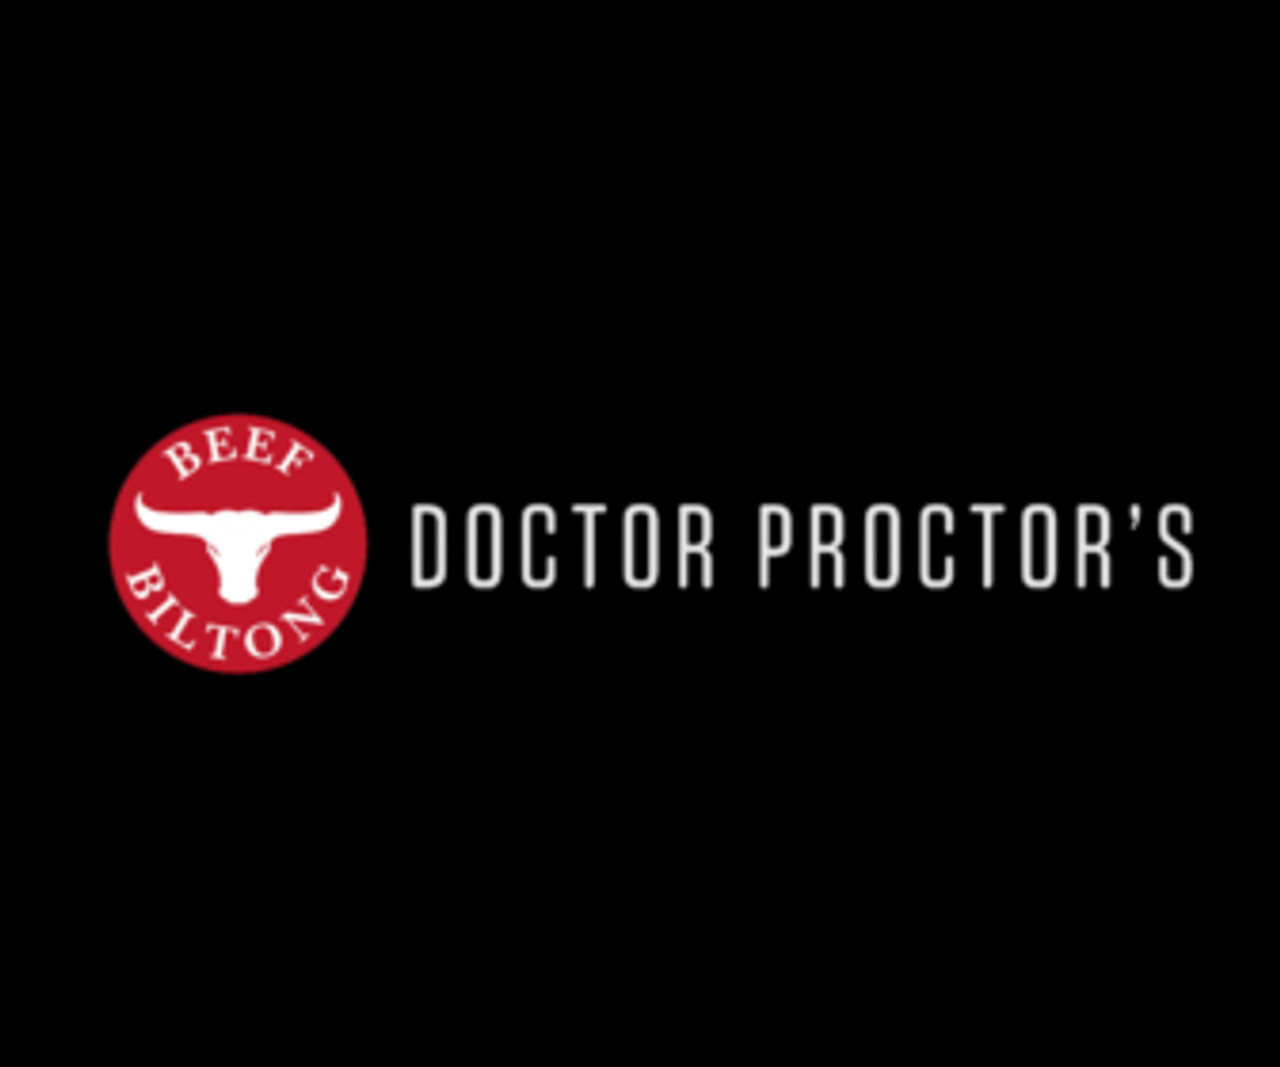 Doctor Proctors Biltong